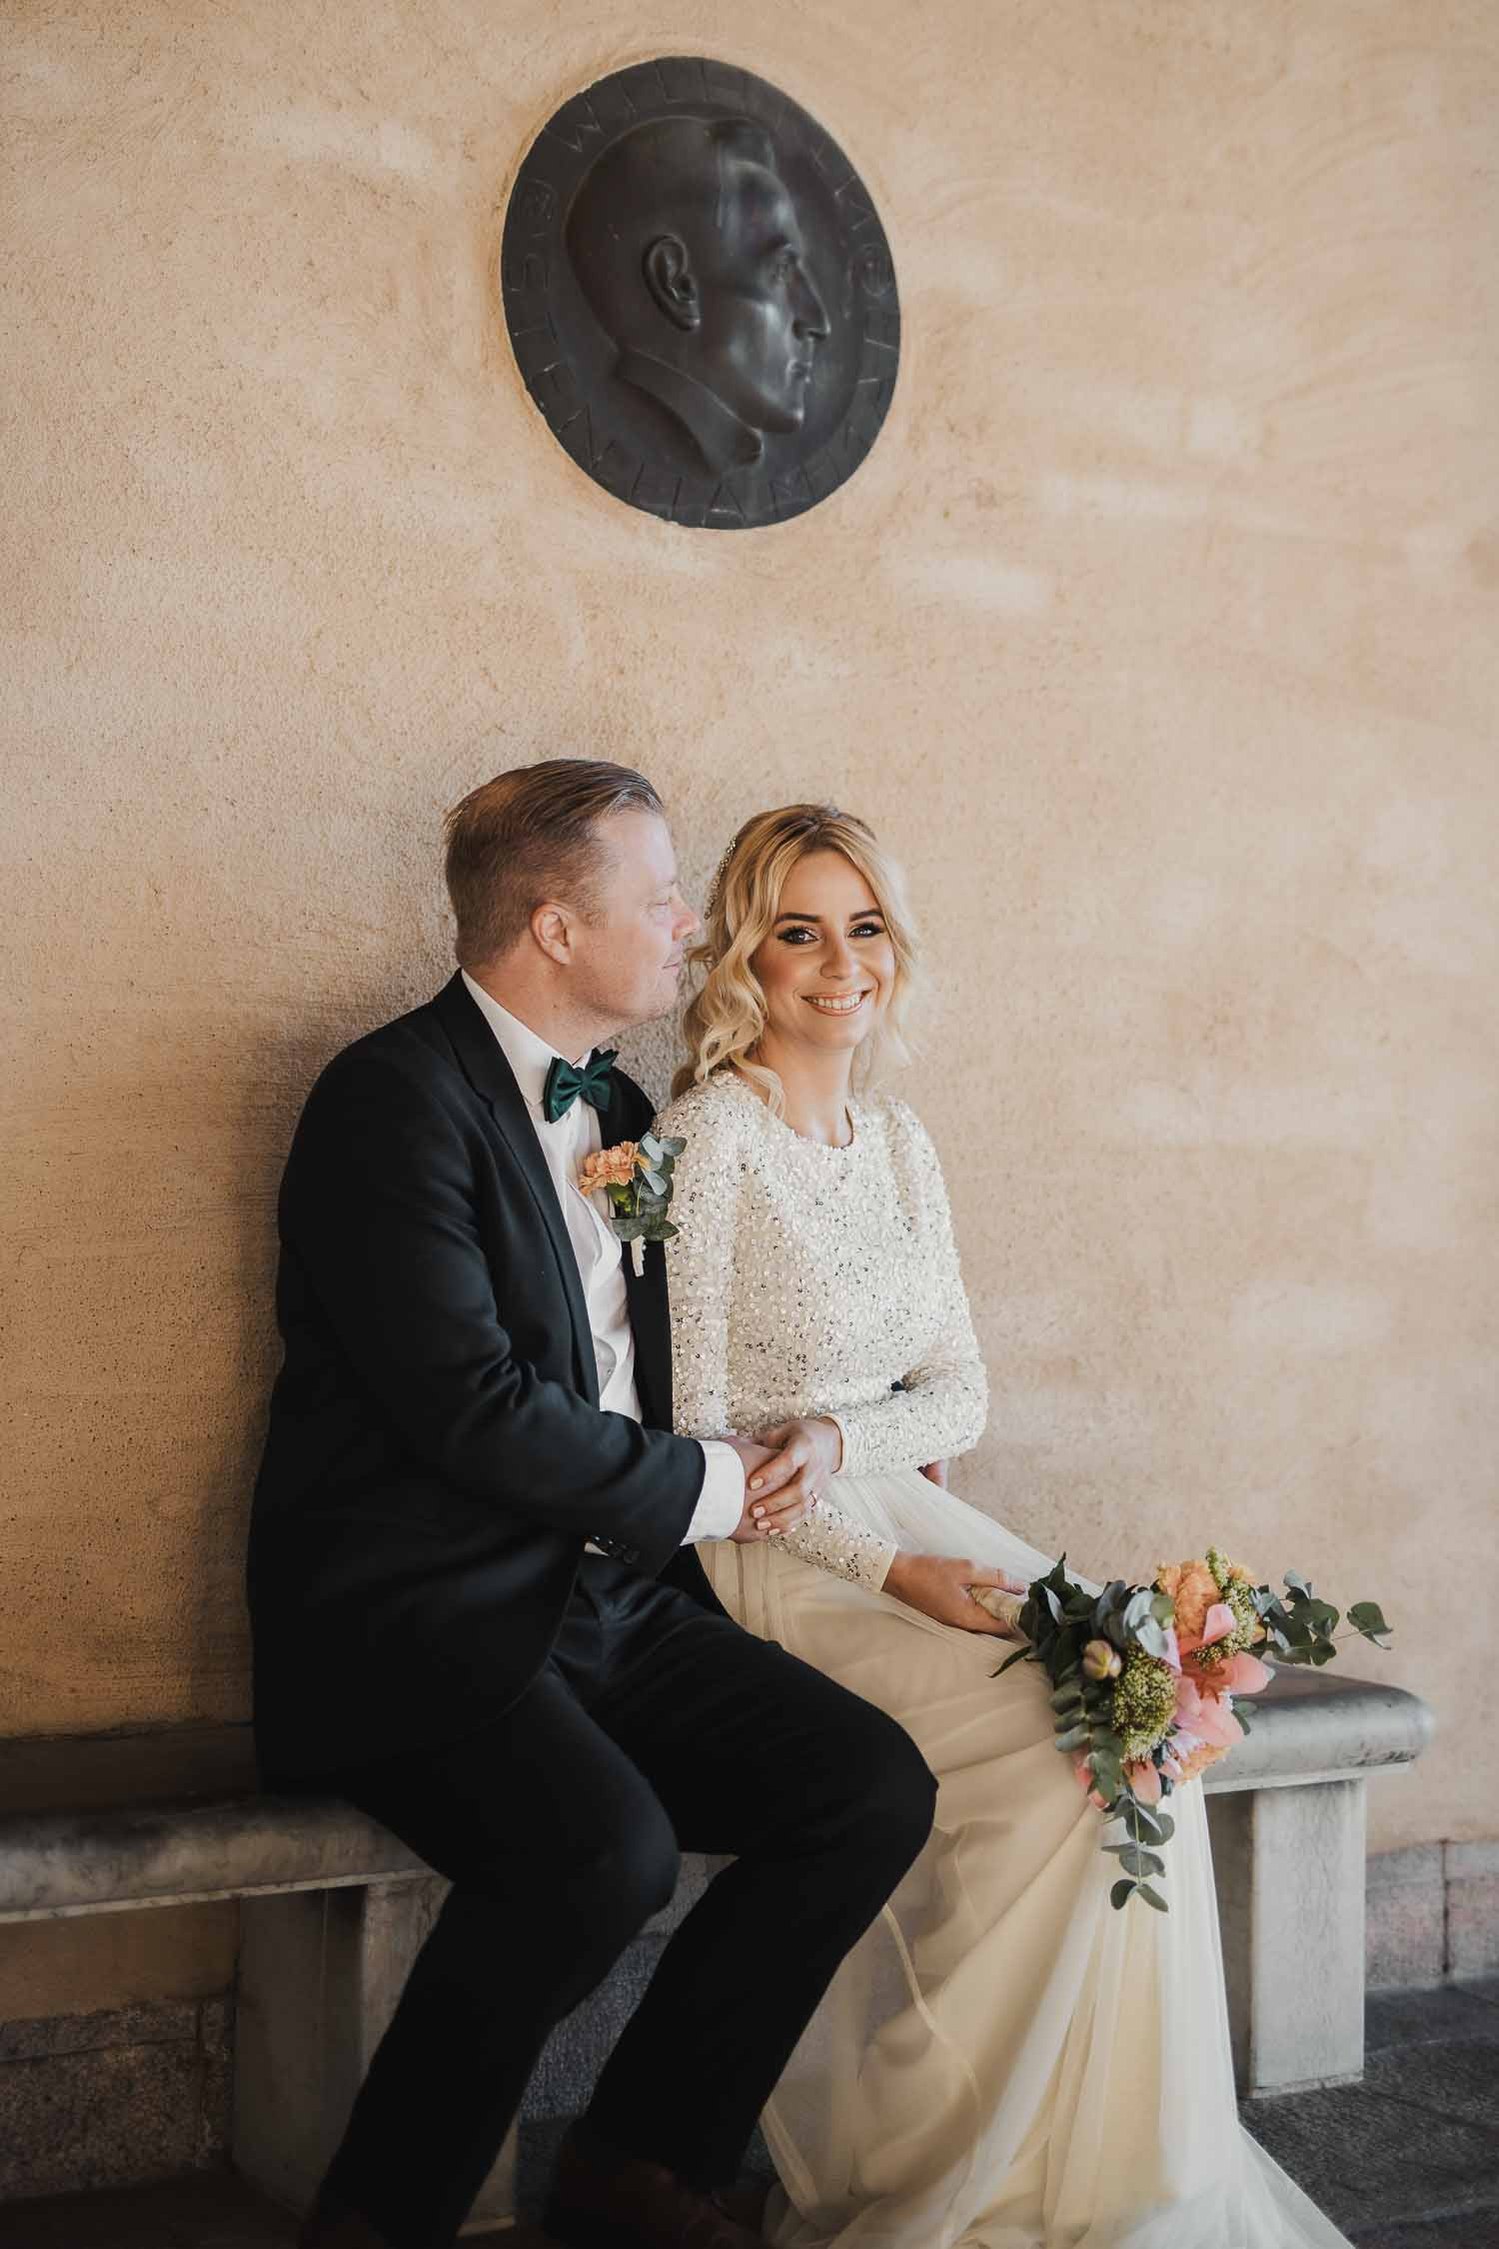 Bröllopspar sitter på en bänk, hon i vit lång klänning och brudbukett i handen. Han i mörkblå kostym och fluga. I bakgrunden sandstensfärgad vägg och en rund skulptur.